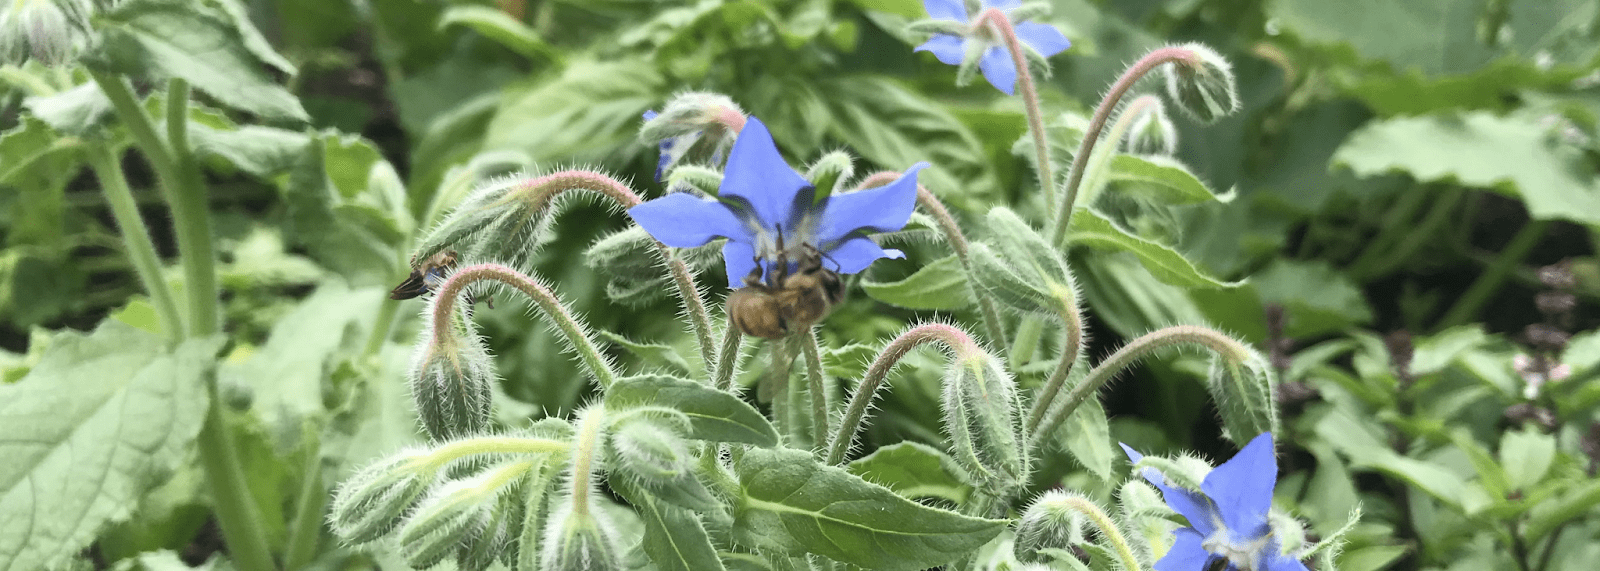 Obraz szerokości nagłówka przedstawiający niebieskofioletowy kwiat otoczony liśćmi i łodygami odwiedzany przez pszczołę.